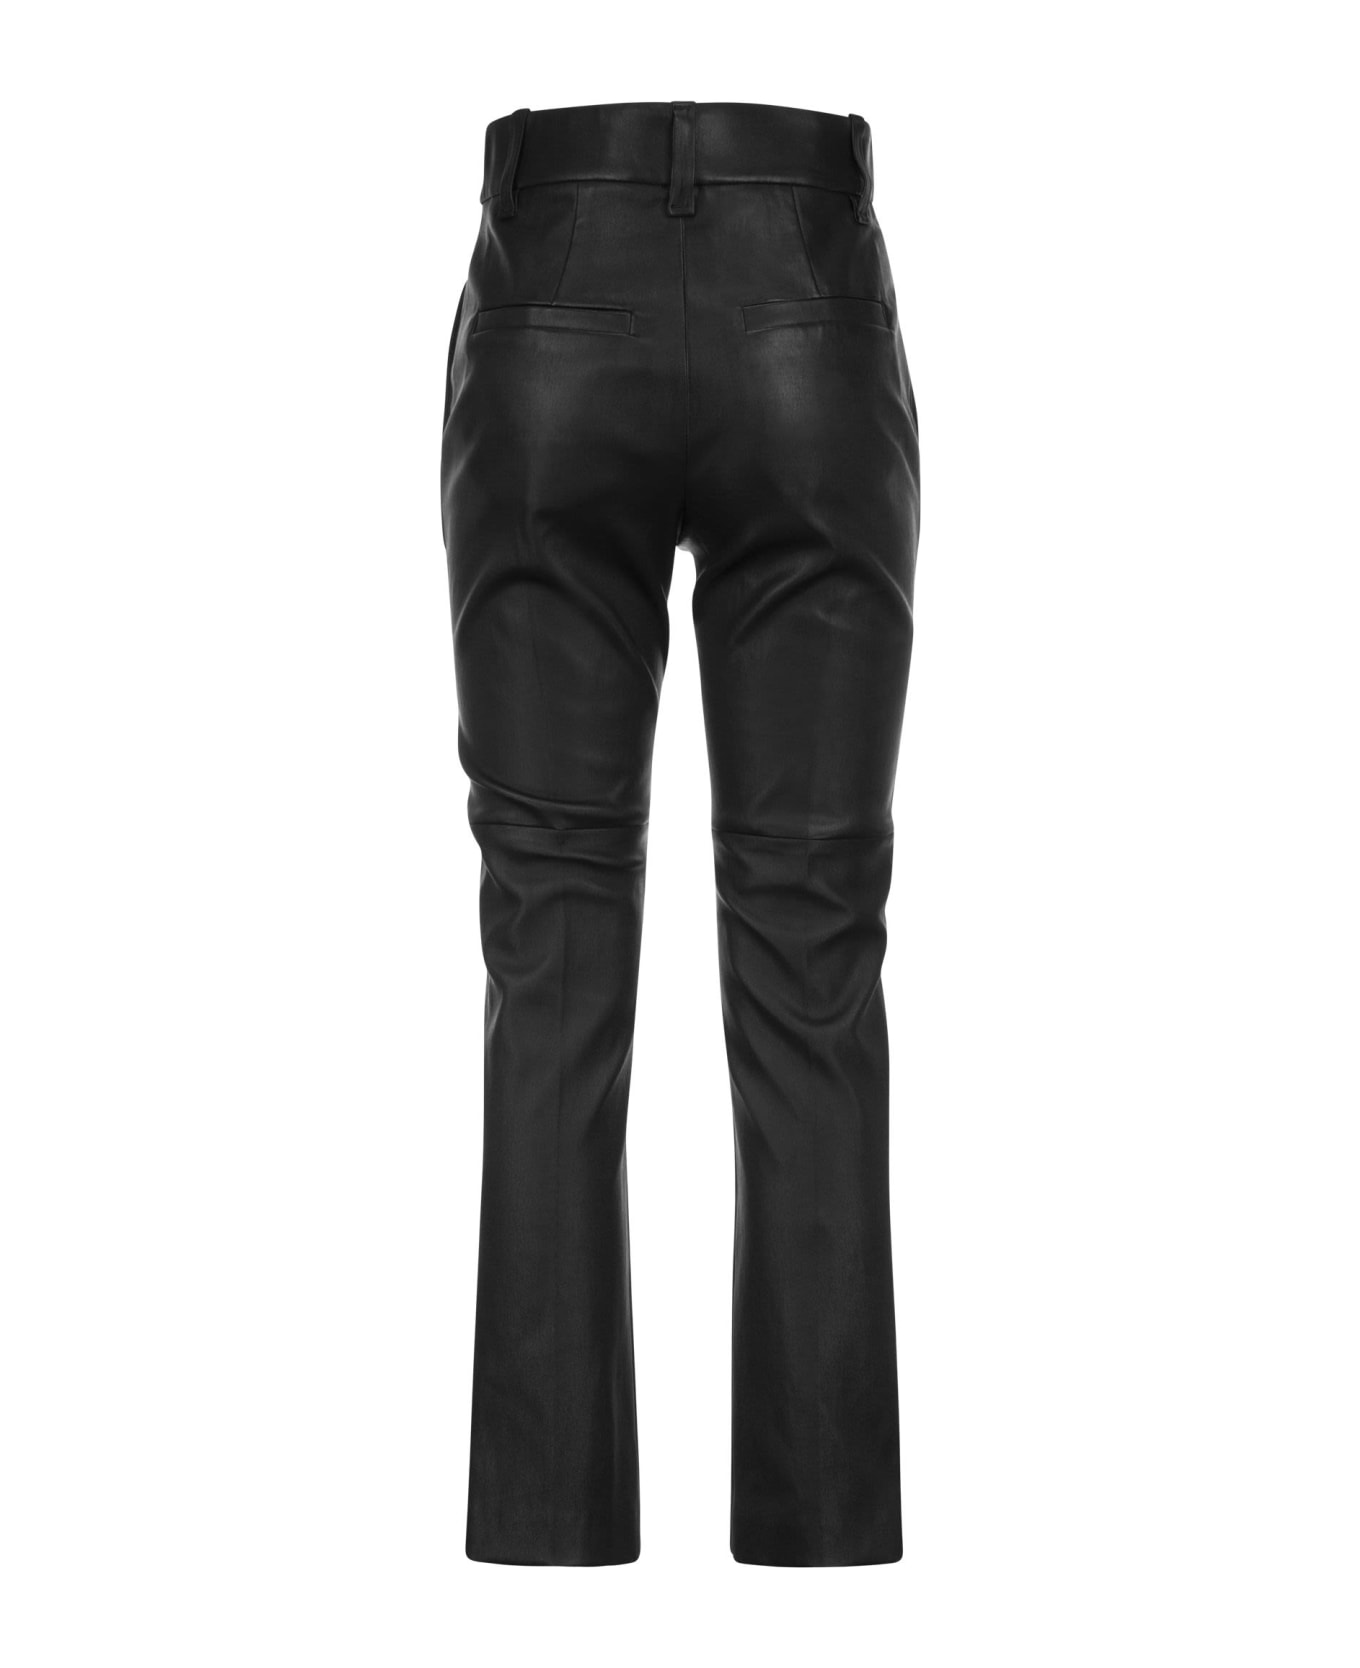 Brunello Cucinelli Nappa Leather Cigarette Trousers - Black ボトムス